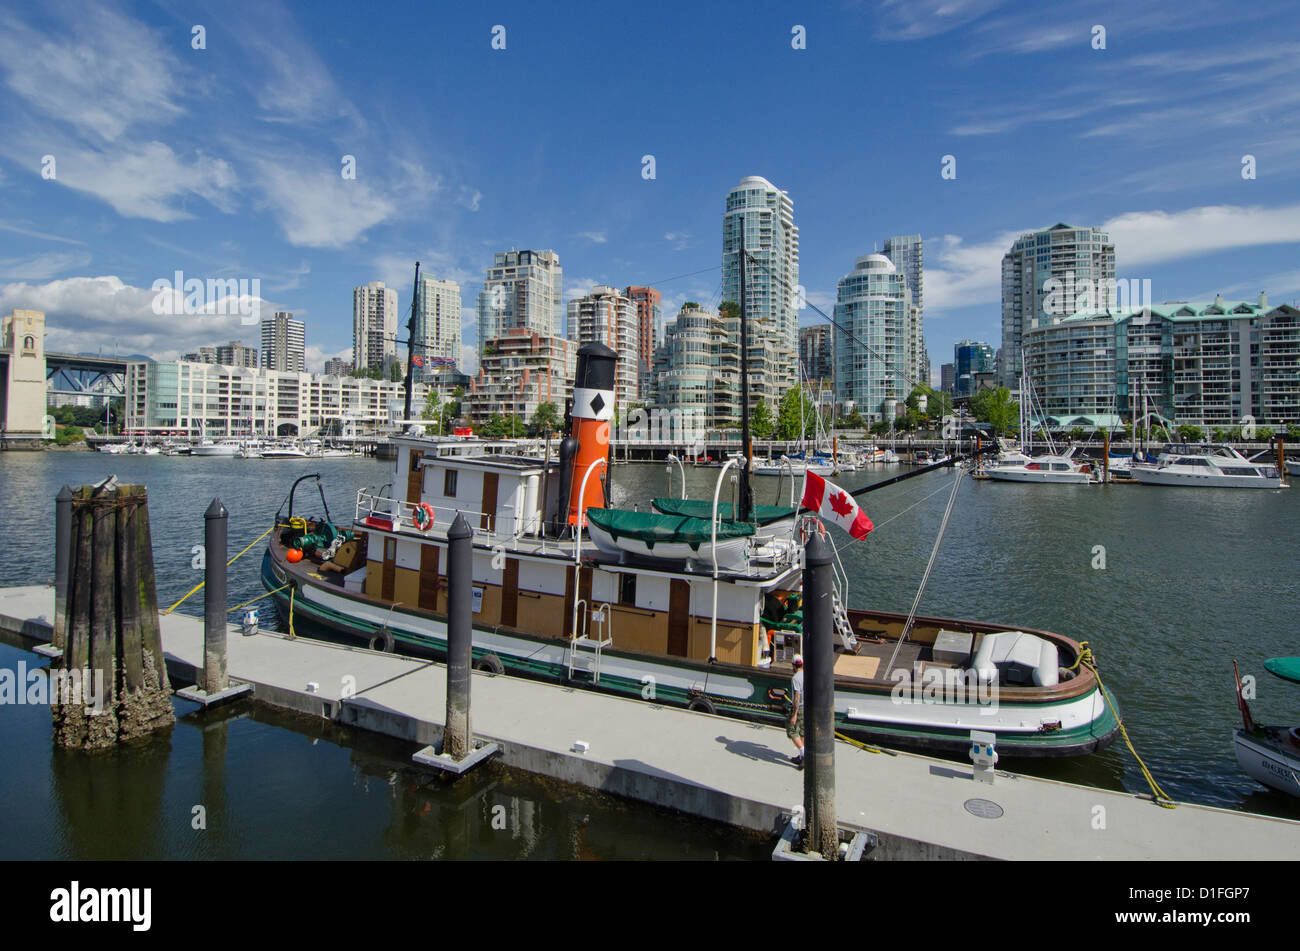 La ville ultra moderne de Vancouver British Columbia Canada avec son port maritime et gratte-ciel Banque D'Images